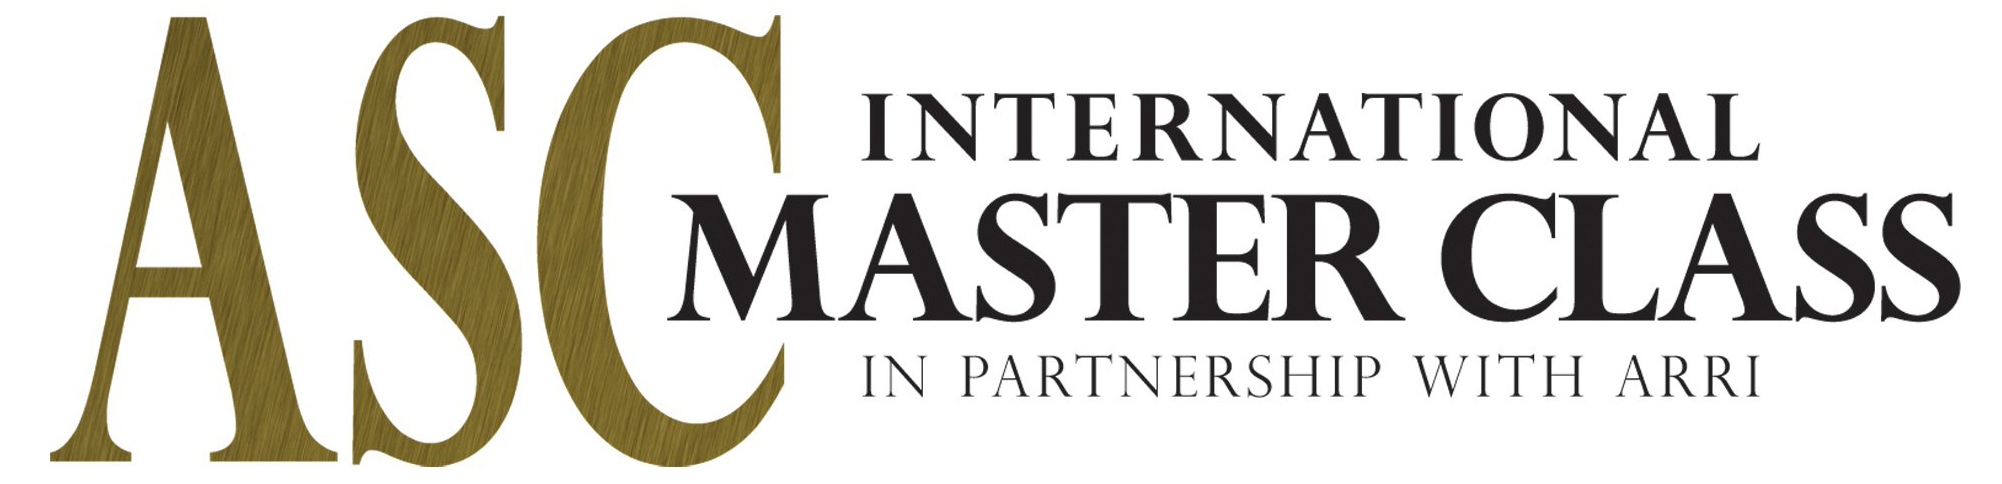 ASC International Master Class